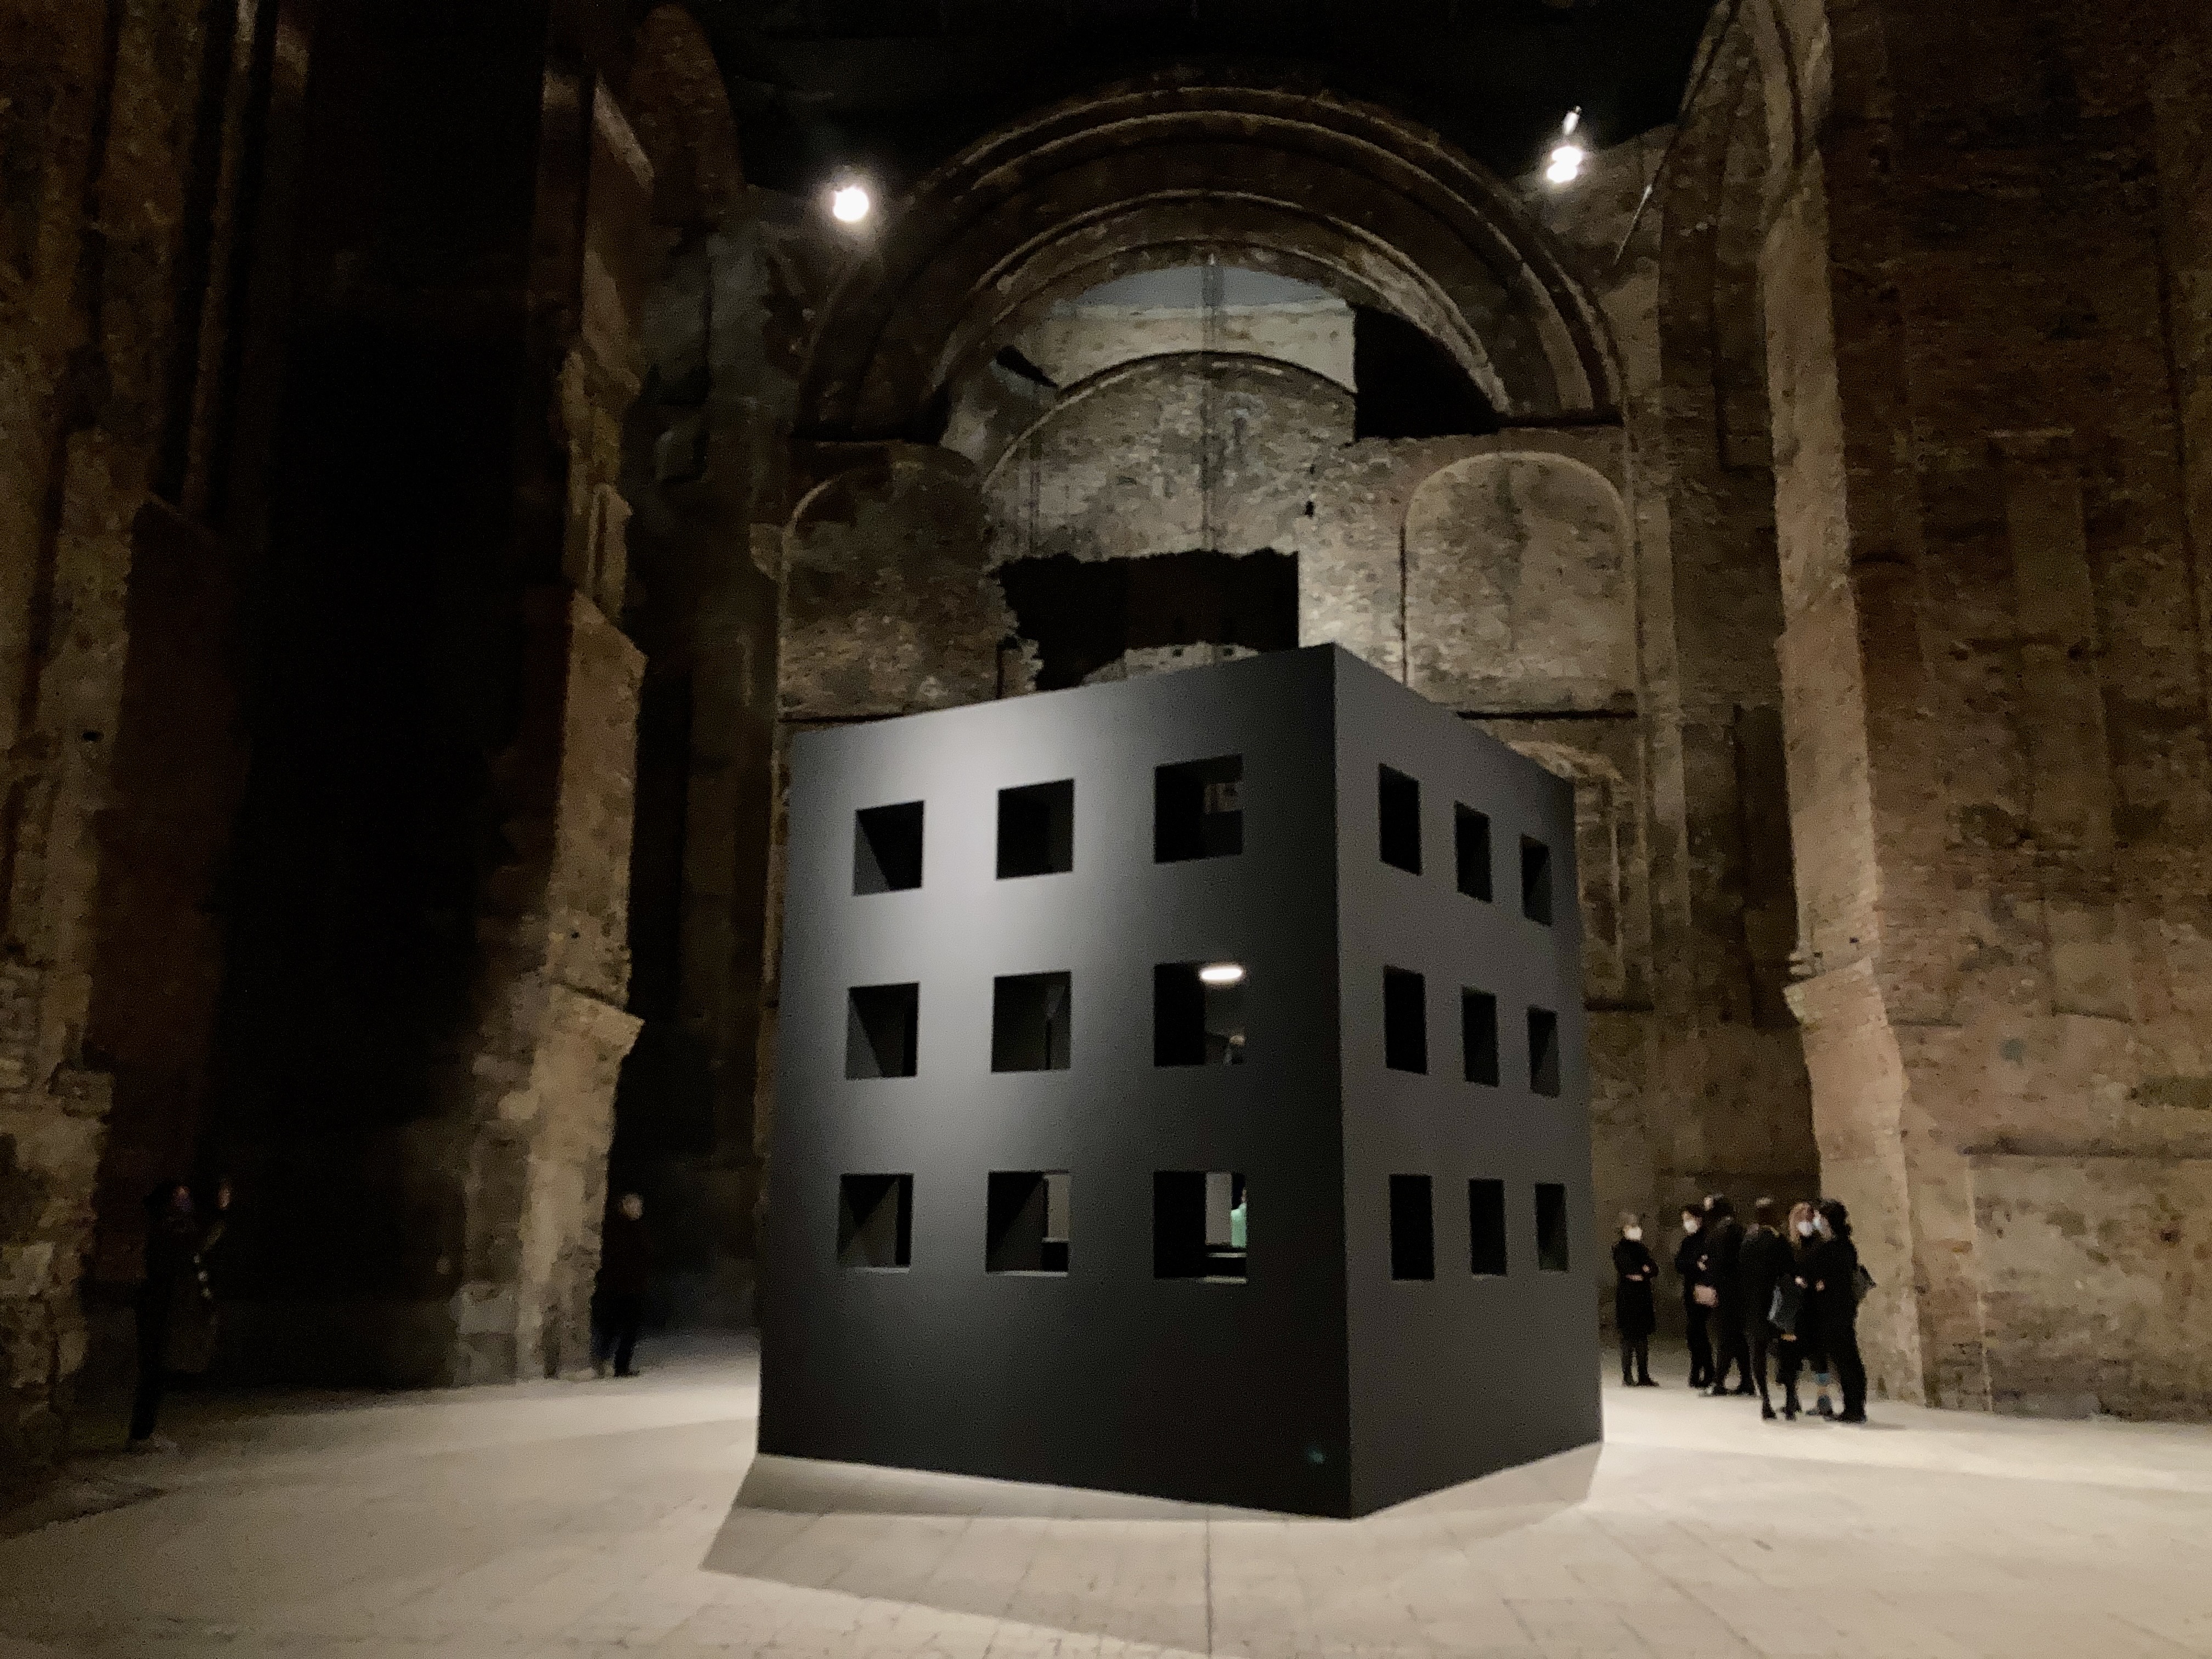 A megismerés és a képzelet peremén – Gerhes Gábor ATLAS című kiállításán jártunk, a Kiscelli Múzeumban